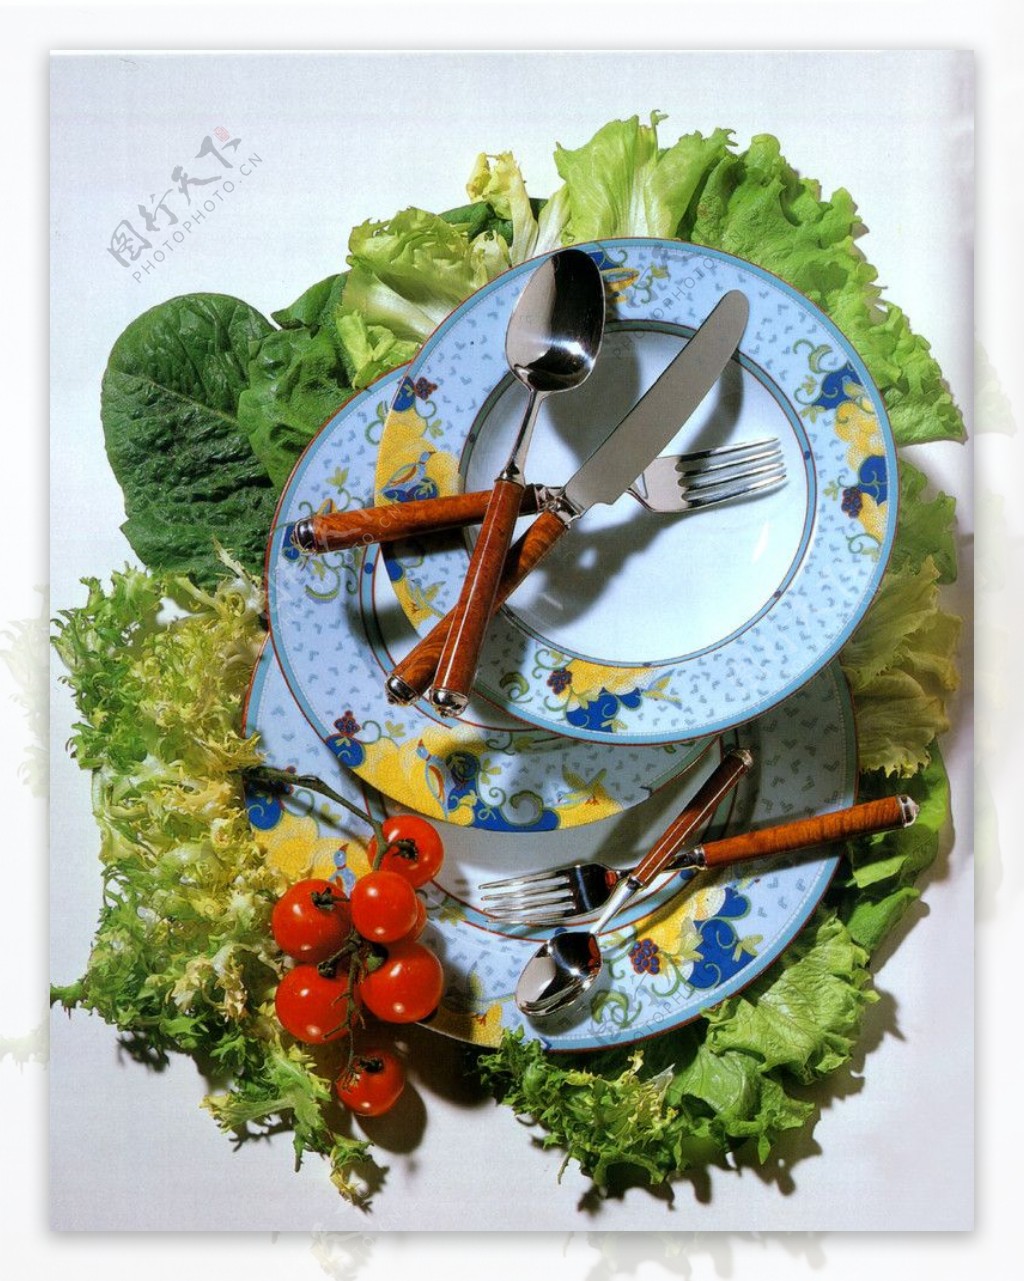 蔬菜与餐具照片图片